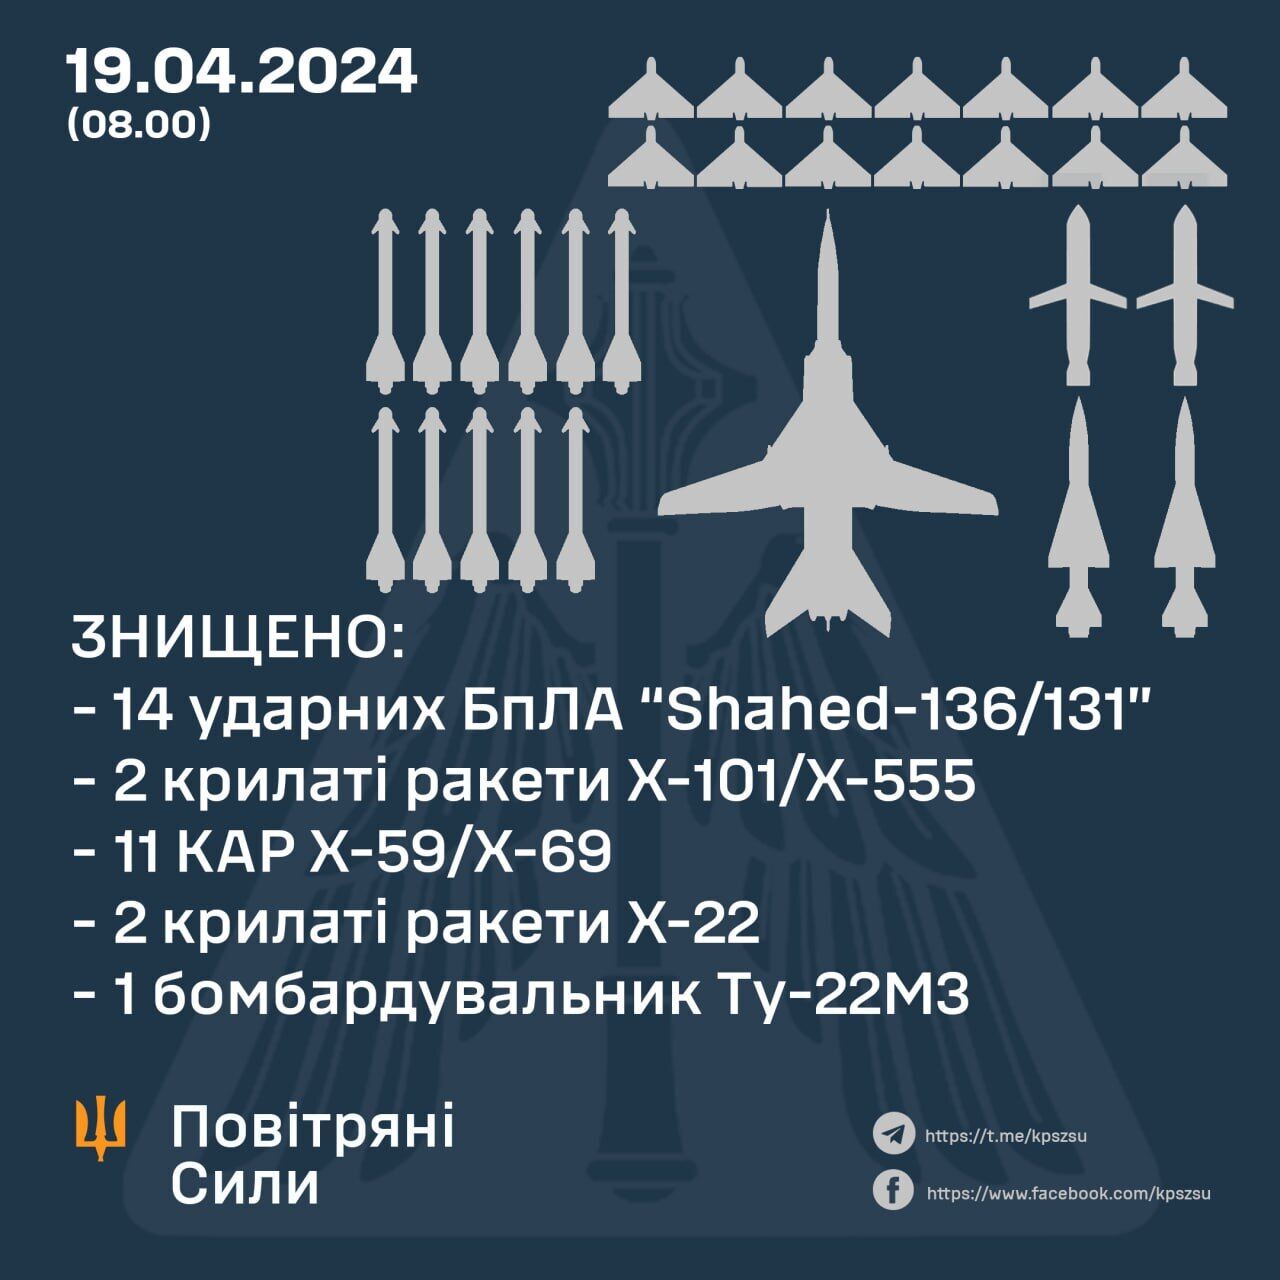 Мінус 15 ракет, 14 "Шахедів" і бомбардувальник: у Повітряних силах розповіли про відбиття атаки РФ